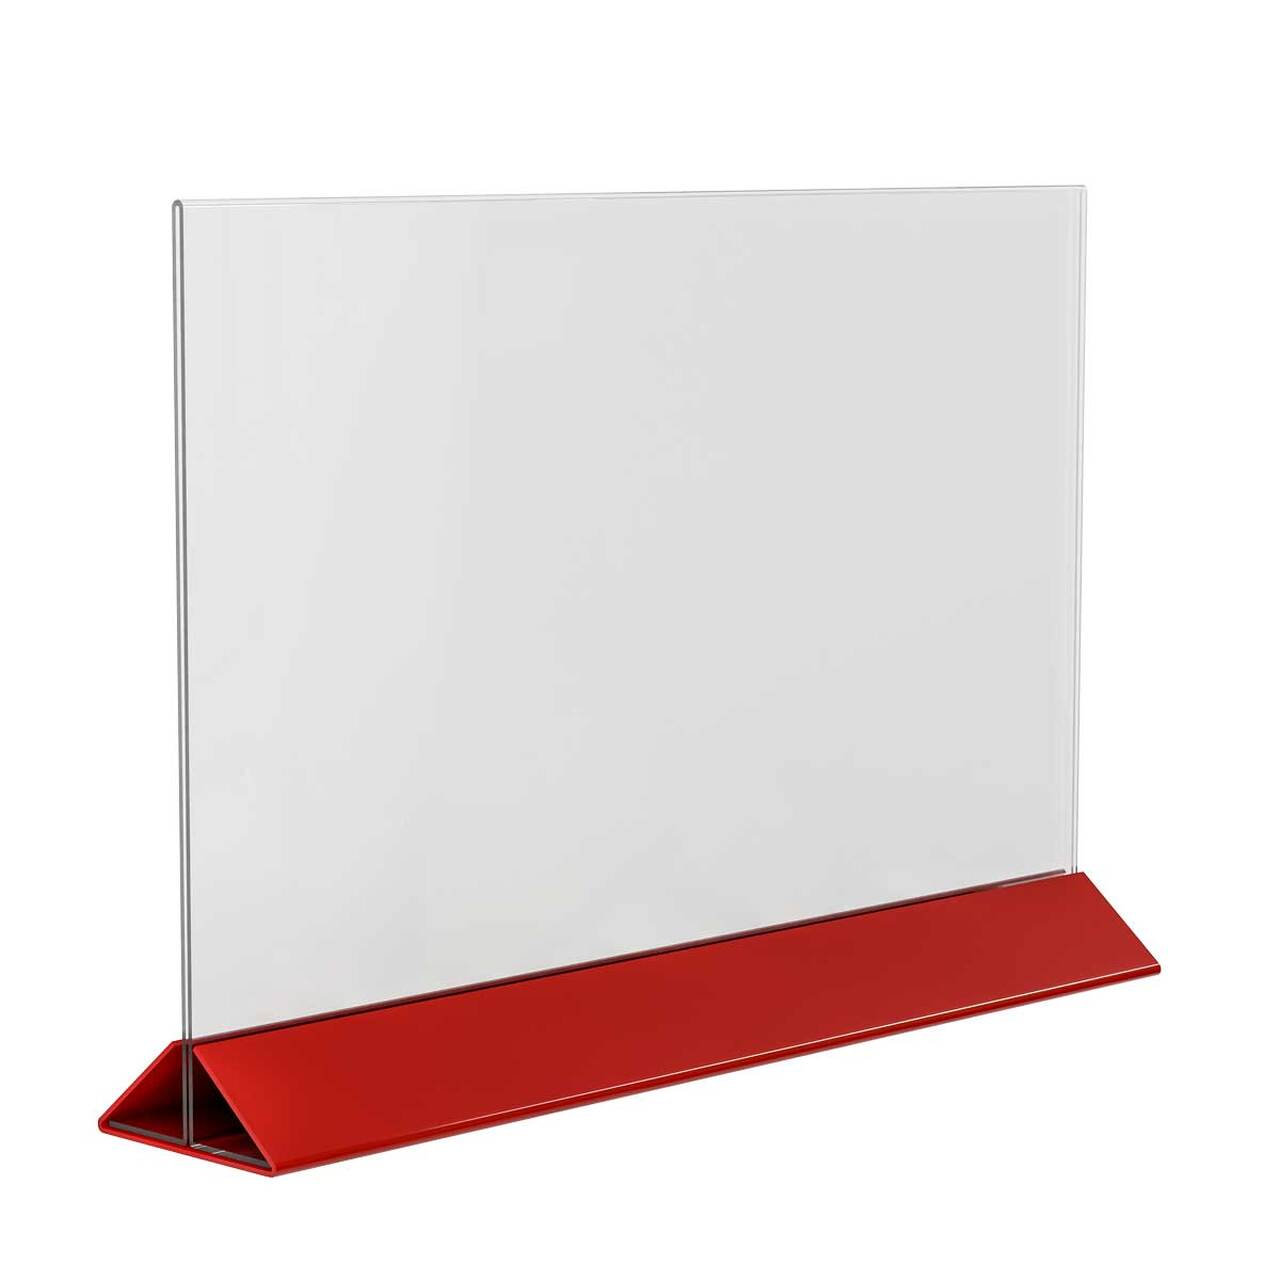 Menu Holder - Suport meniu din plexiglas cu bază roșie A3, JJ DISPLAYS, 297 x 420 mm, Landscape